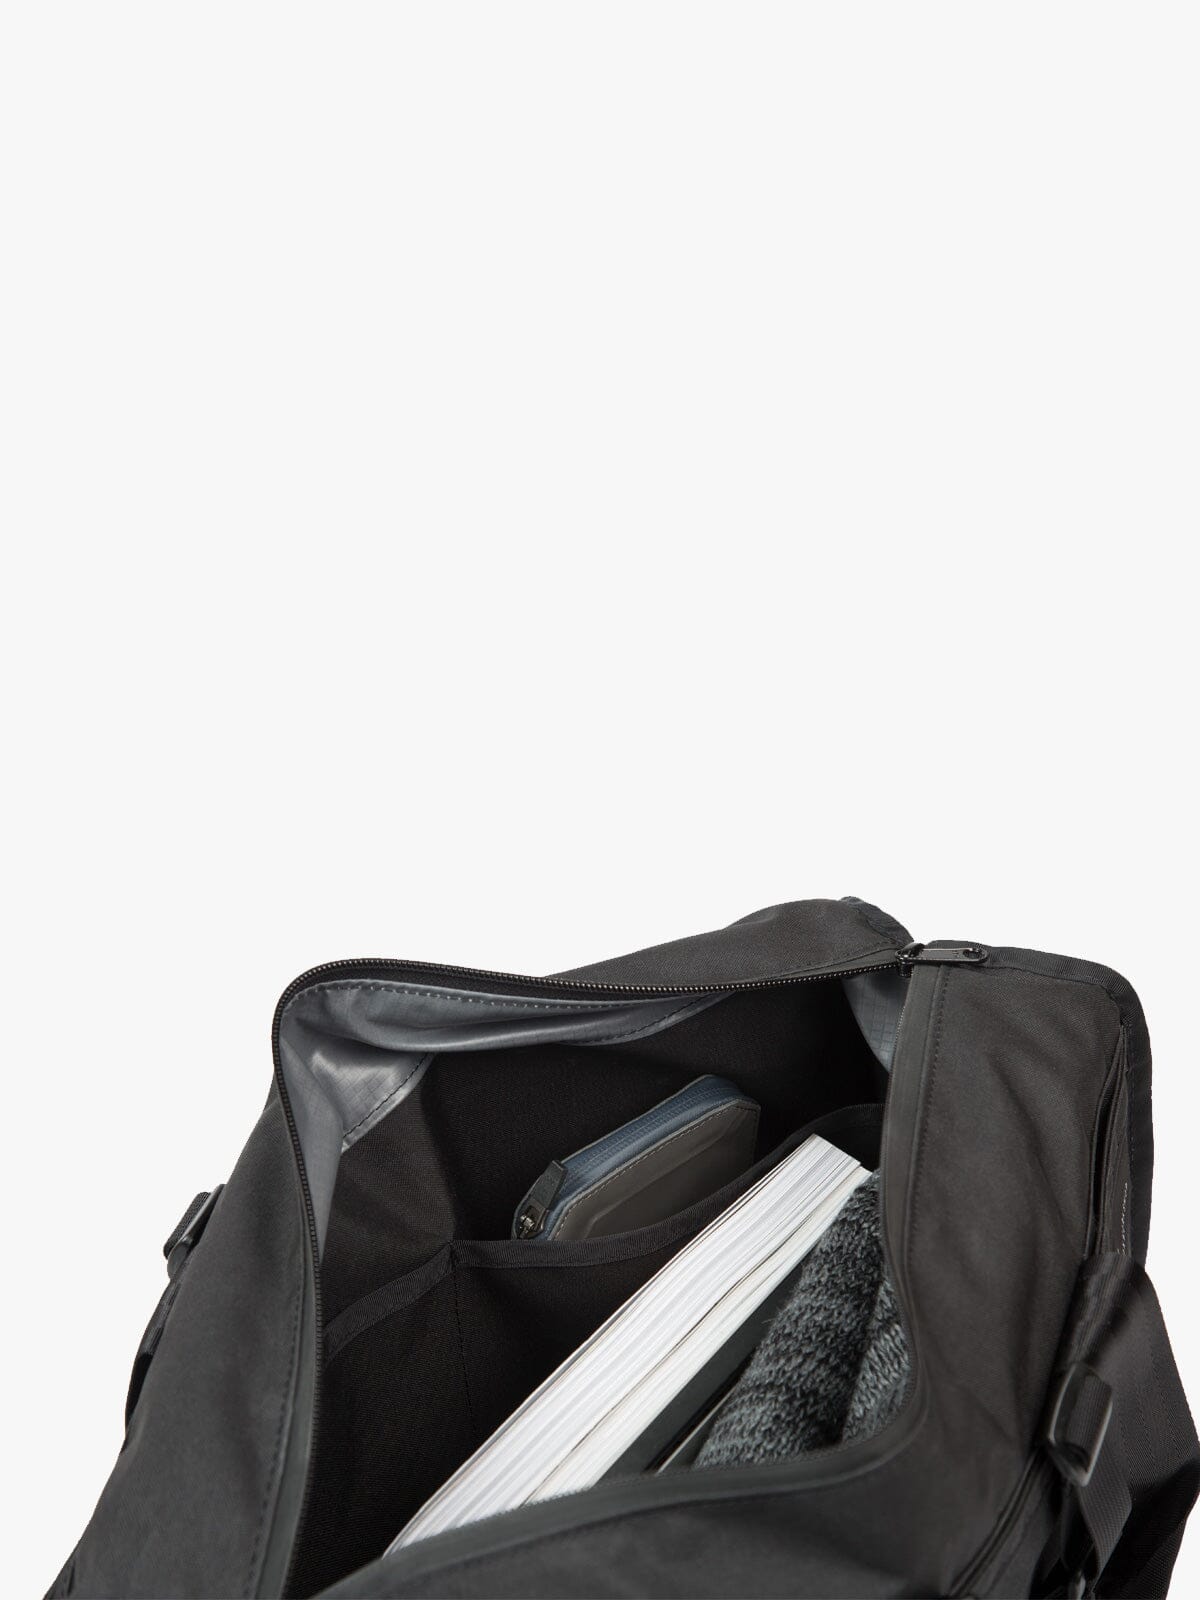 Transit Laptop Brief by Mission Workshop - Säänkestävät laukut ja tekniset vaatteet - San Francisco & Los Angeles - Kestävä - ikuinen takuu